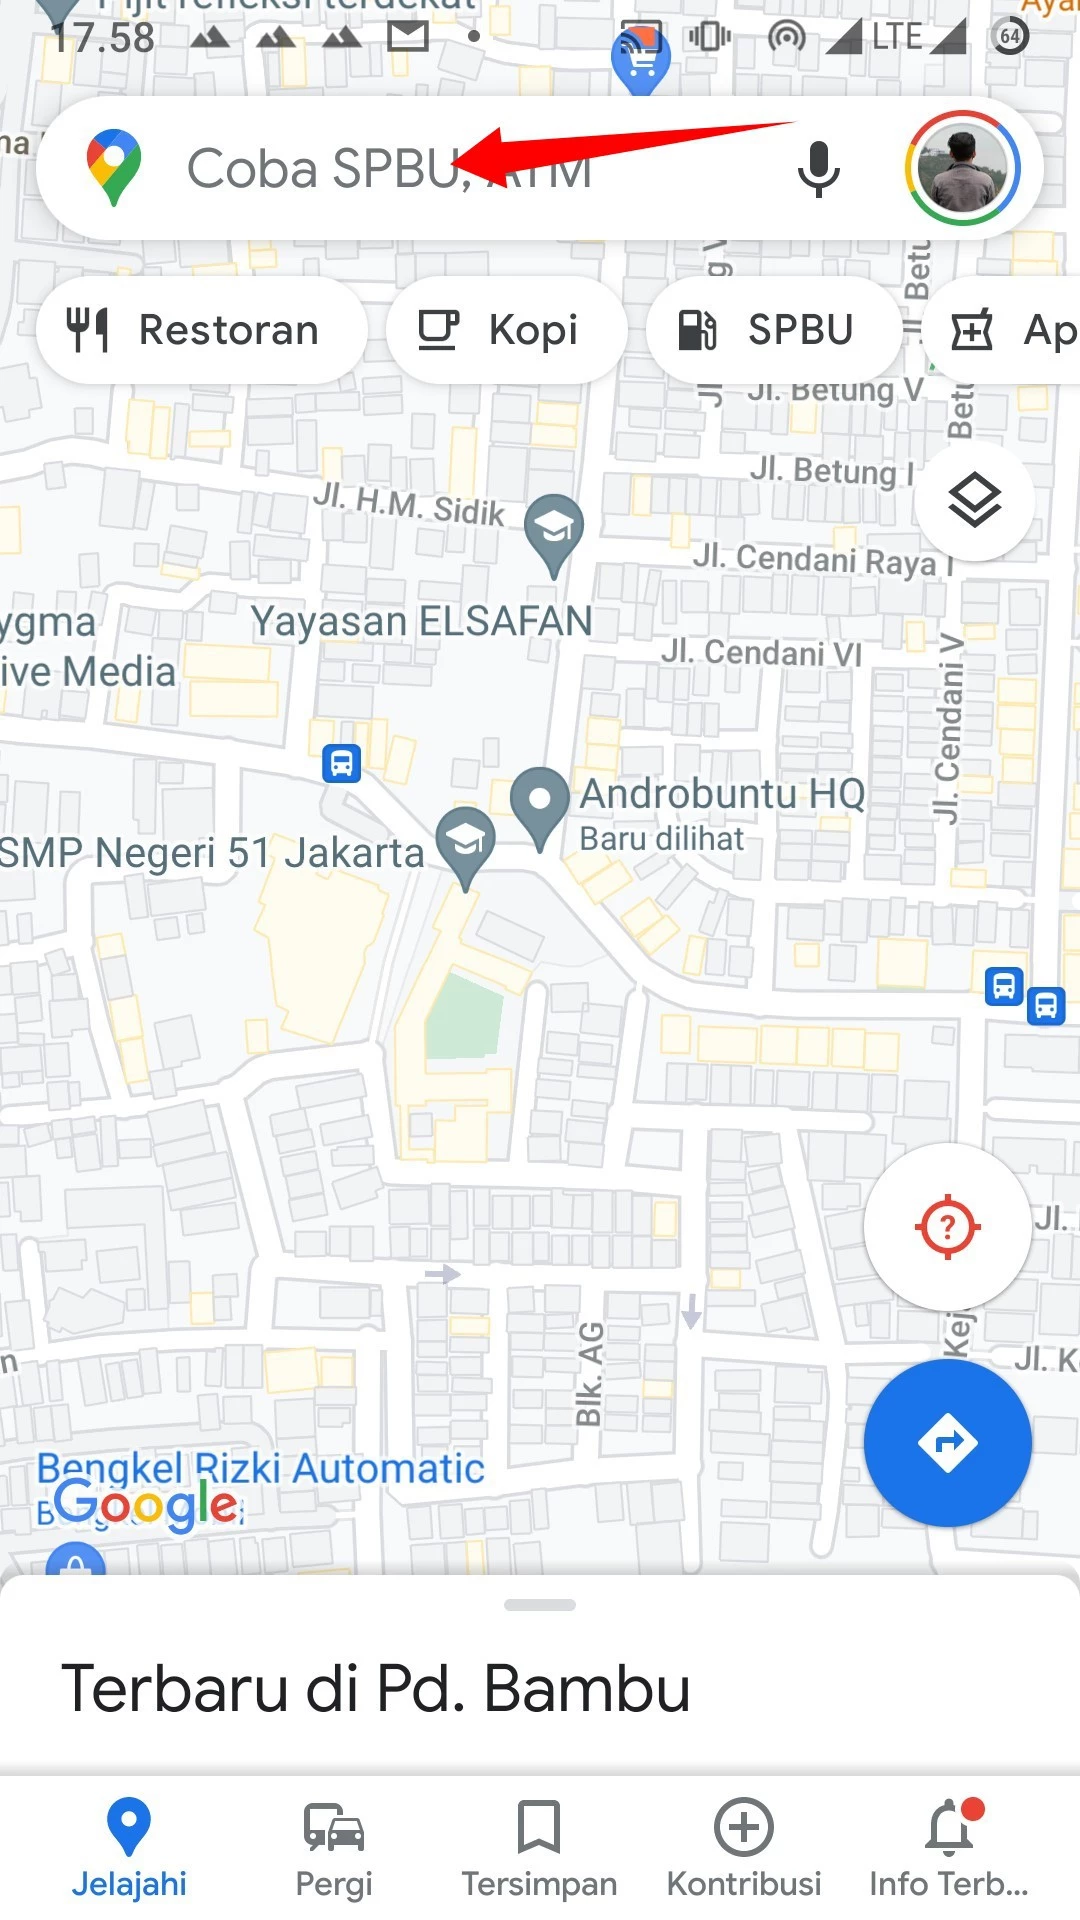 Cara Menyimpan Tempat Favorit di Google Maps by Androbuntu 1